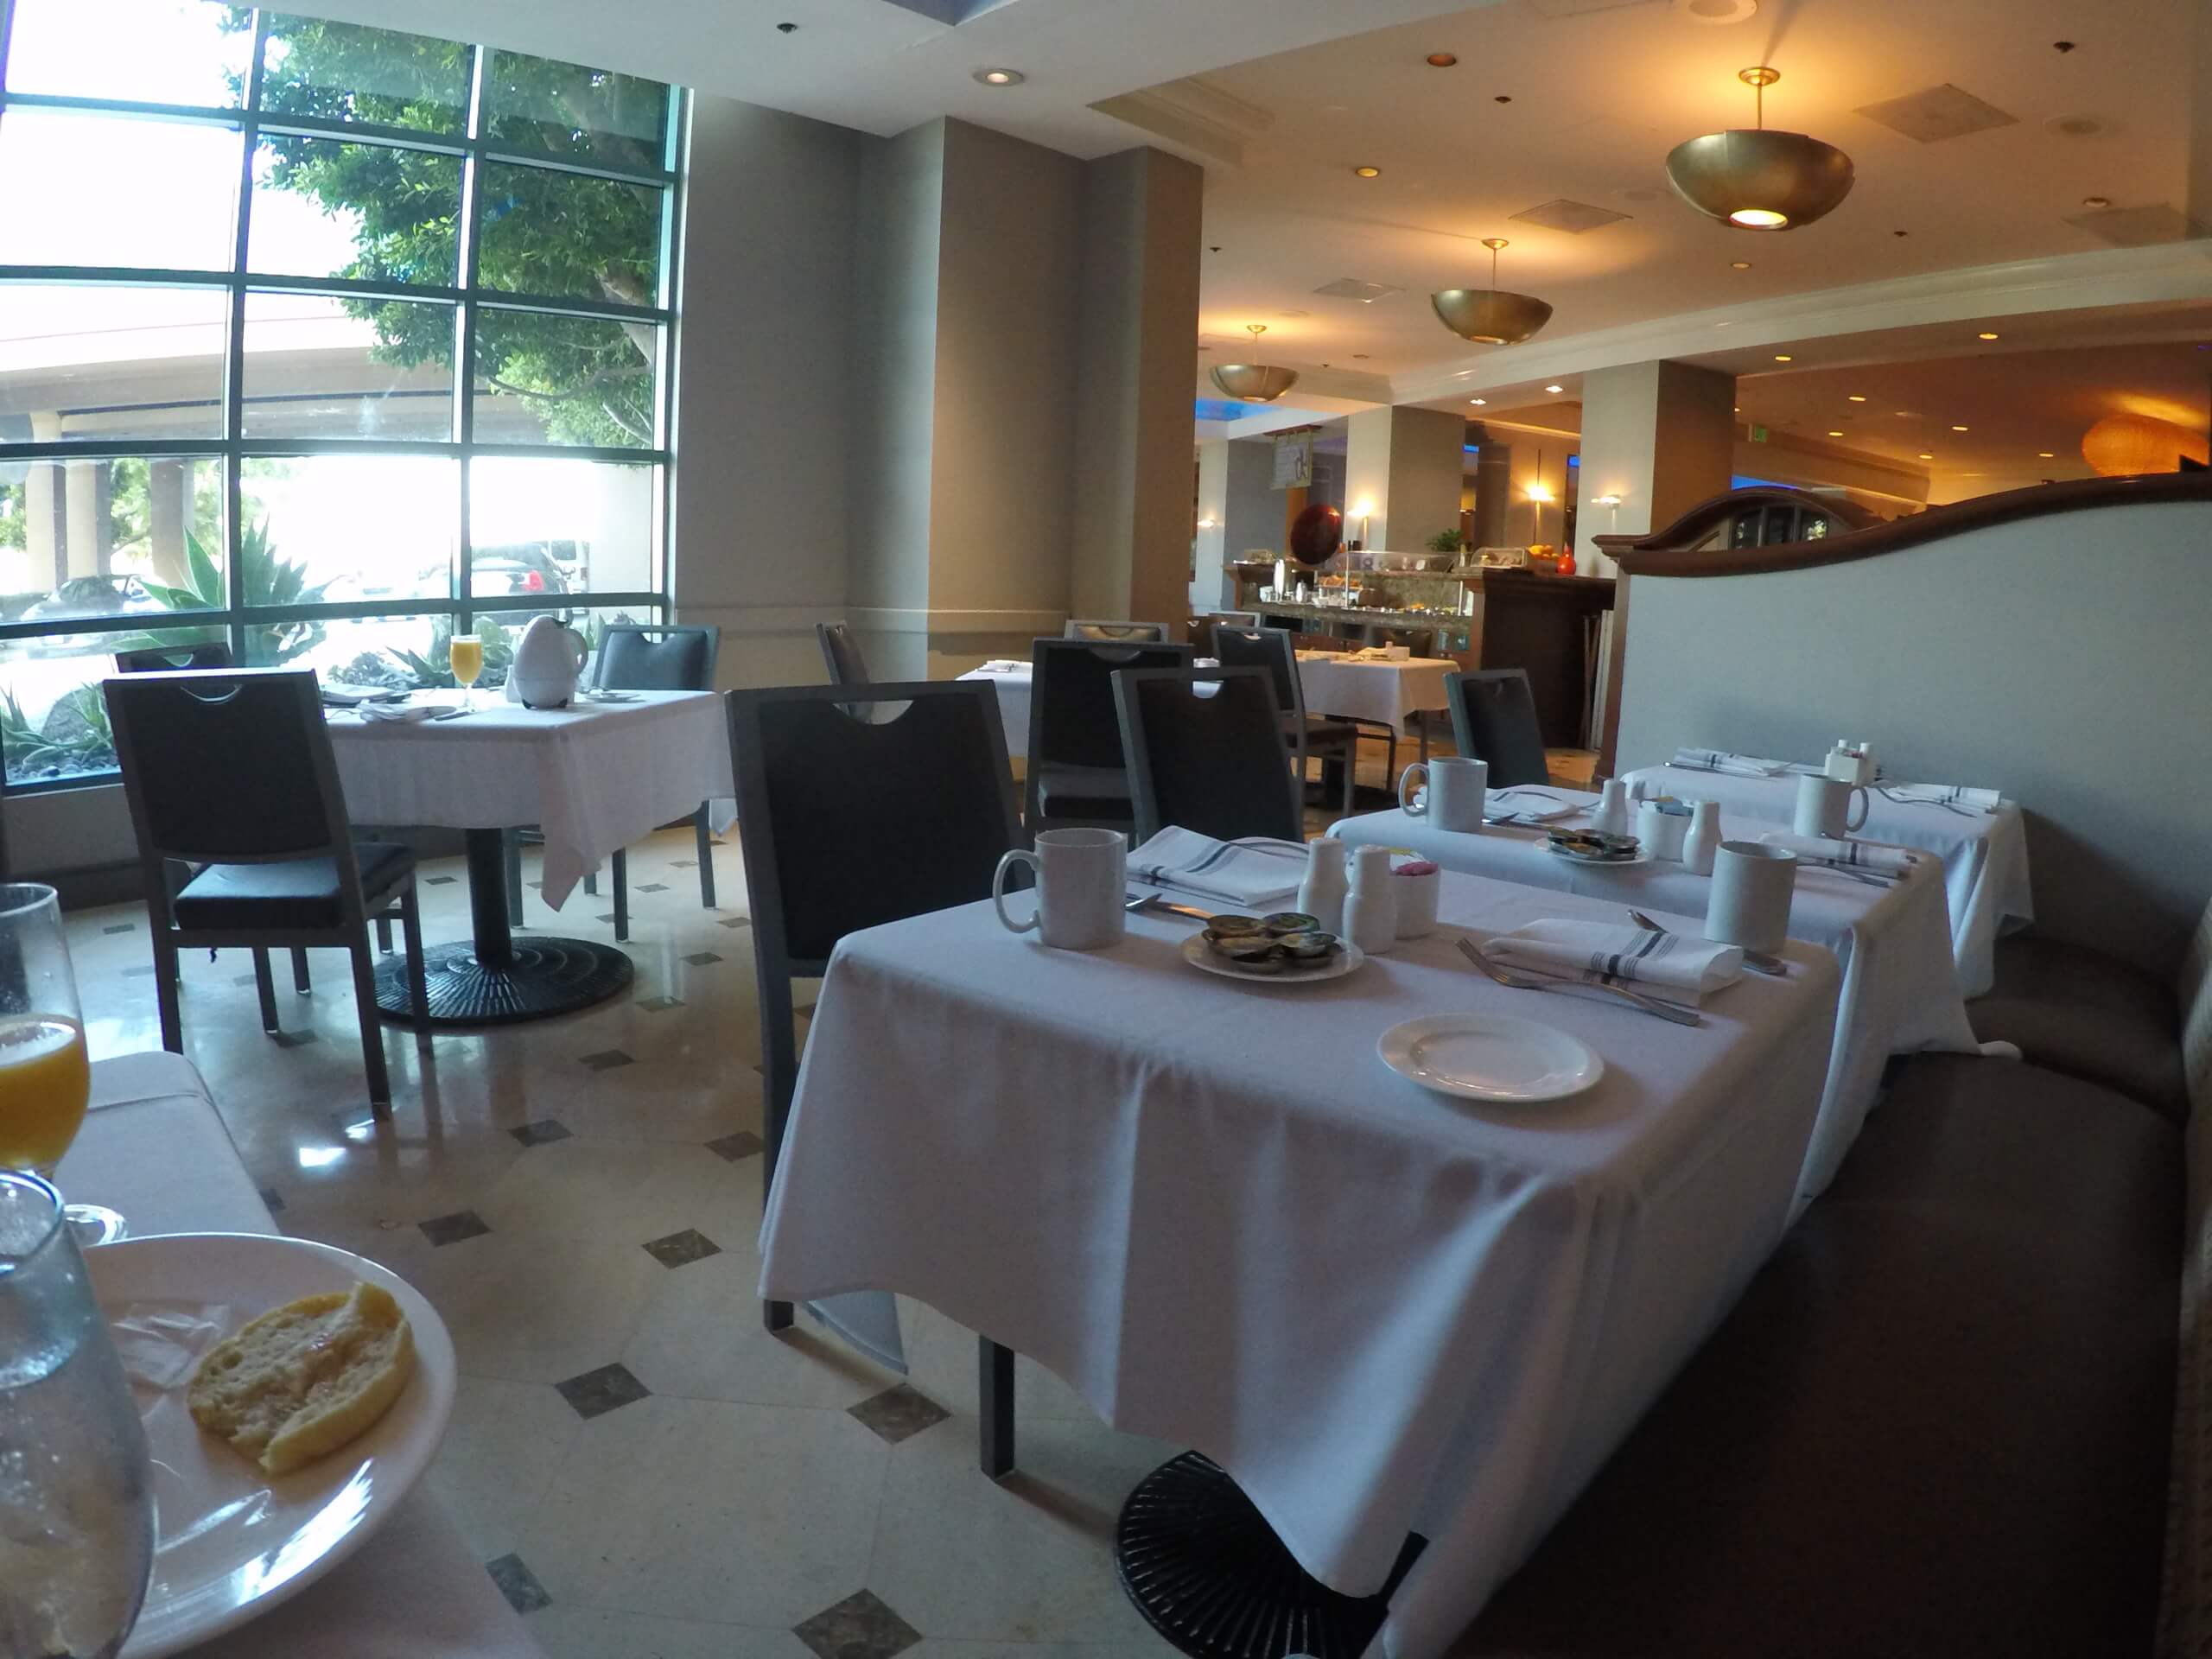 Desayuno buffet - Hotel Renaissance Los Angeles